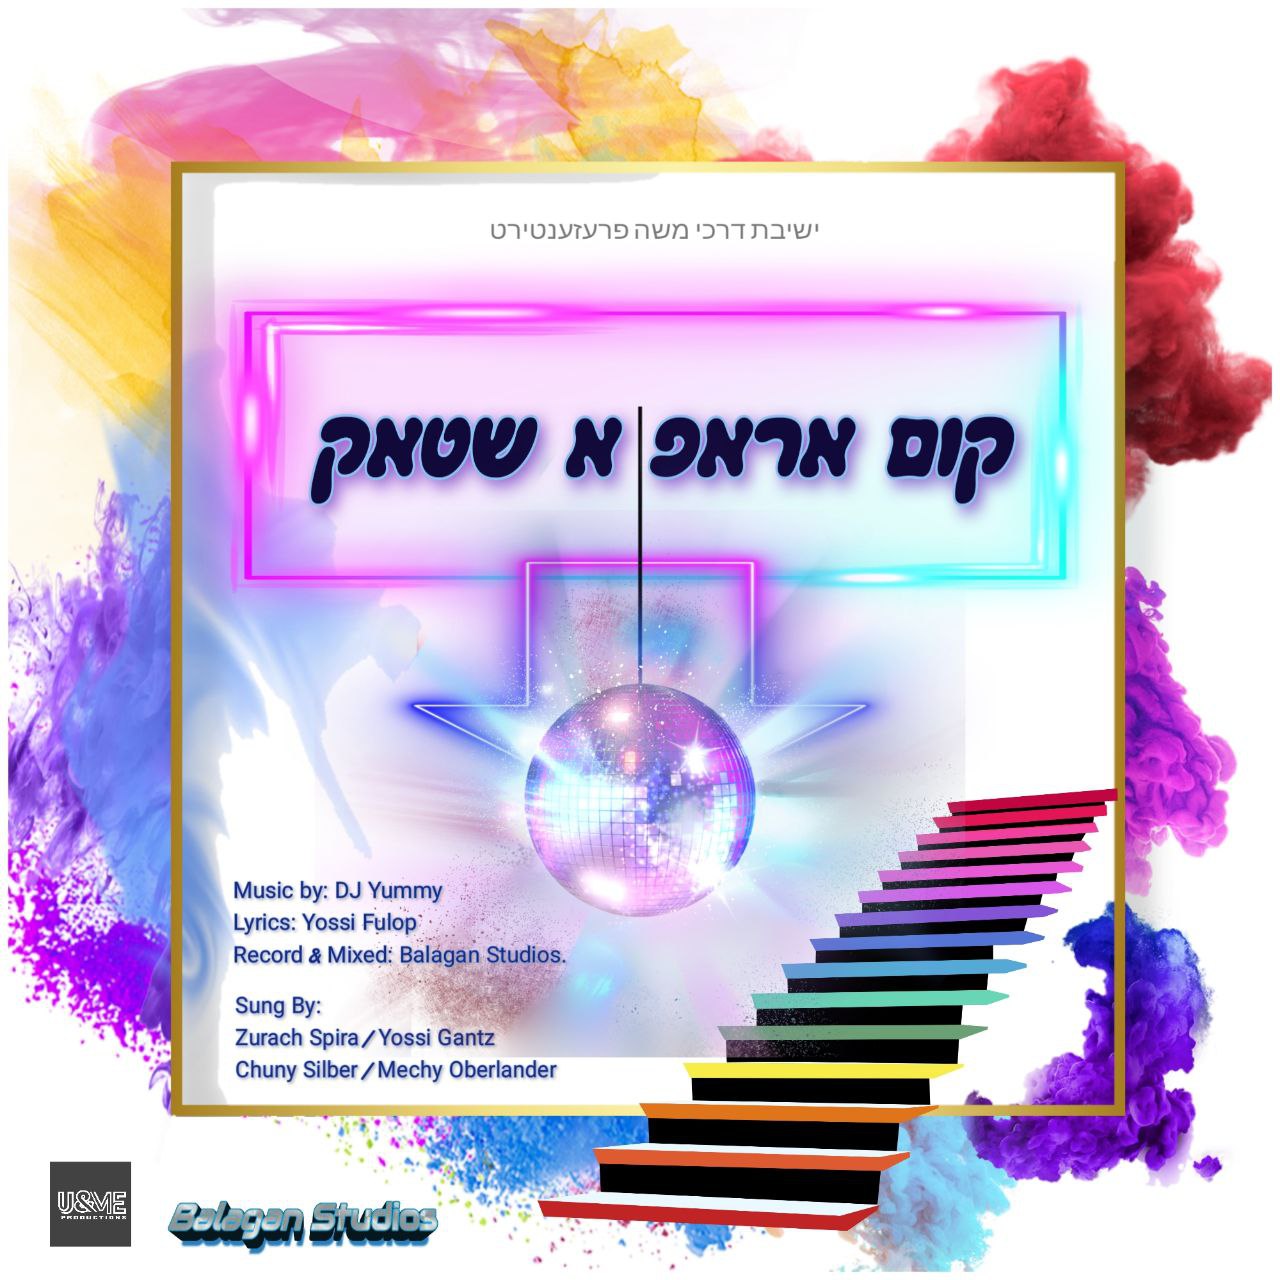 Zurach Spira, Yossi Gantz, Chuny Silber & Mechy Oberlander - Darkei Moshe Yeshiva Purim Song '22 (Single)